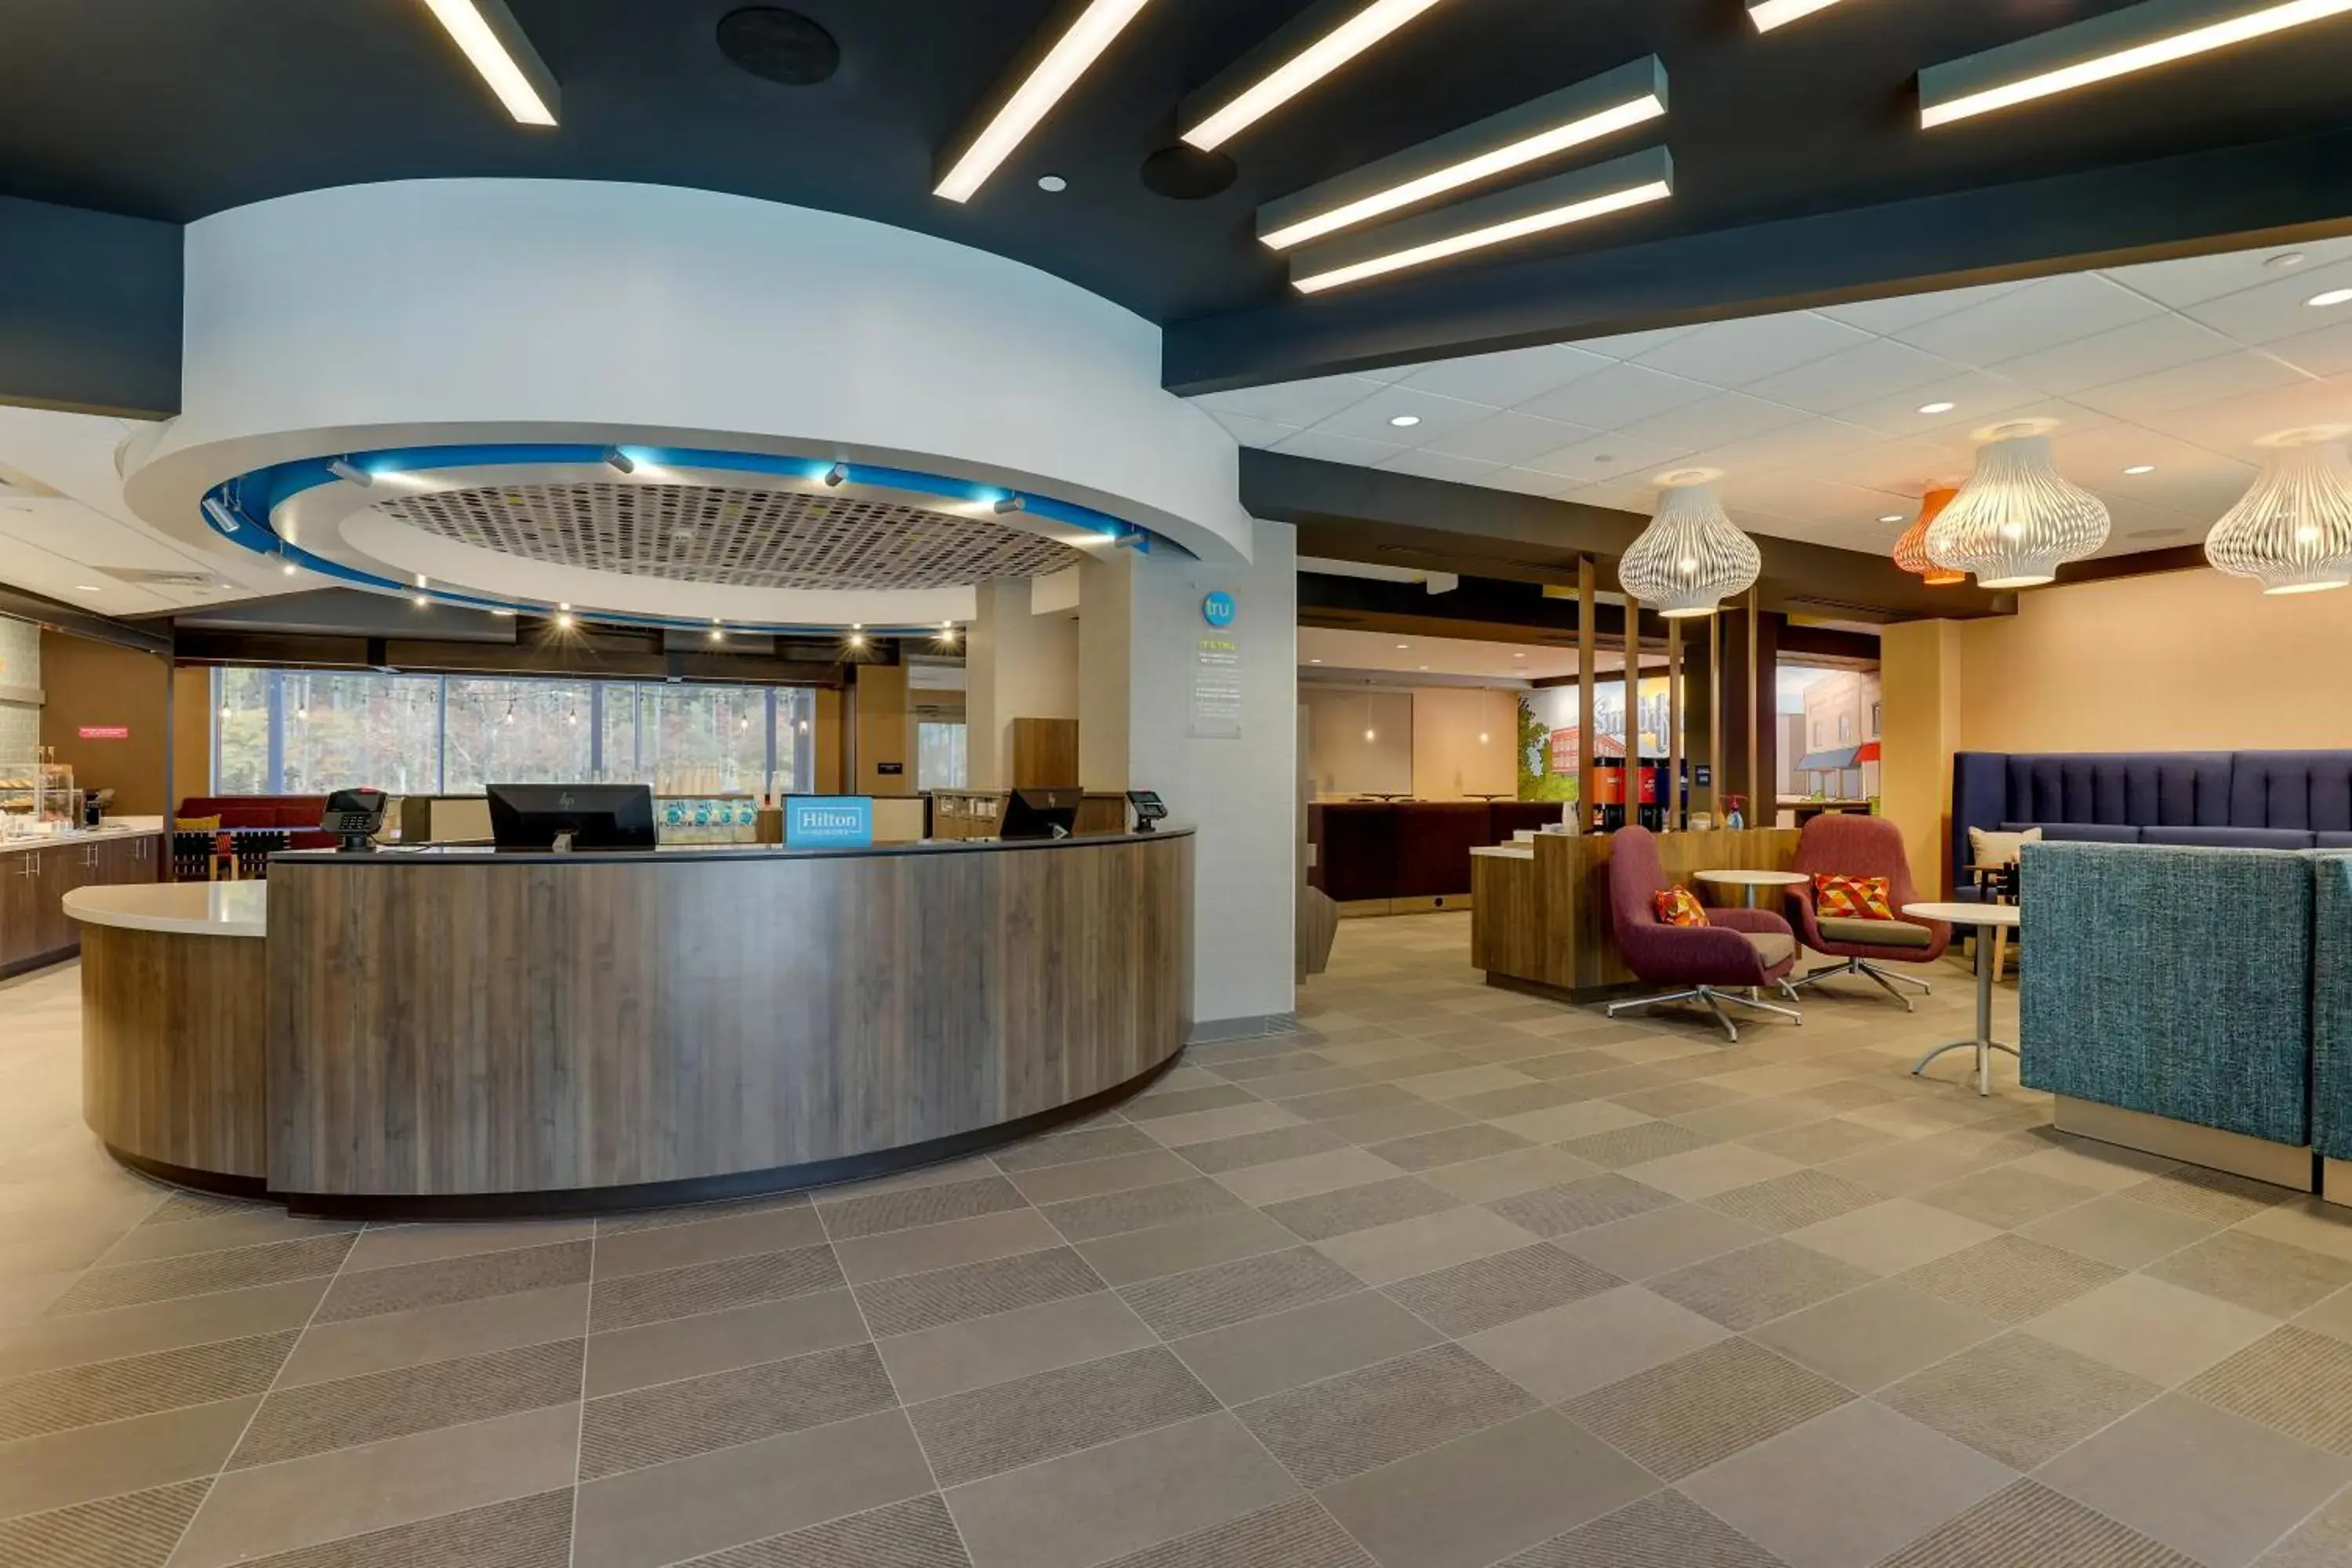 Lobby or reception, Lobby/Reception in Tru By Hilton Leland Wilmington